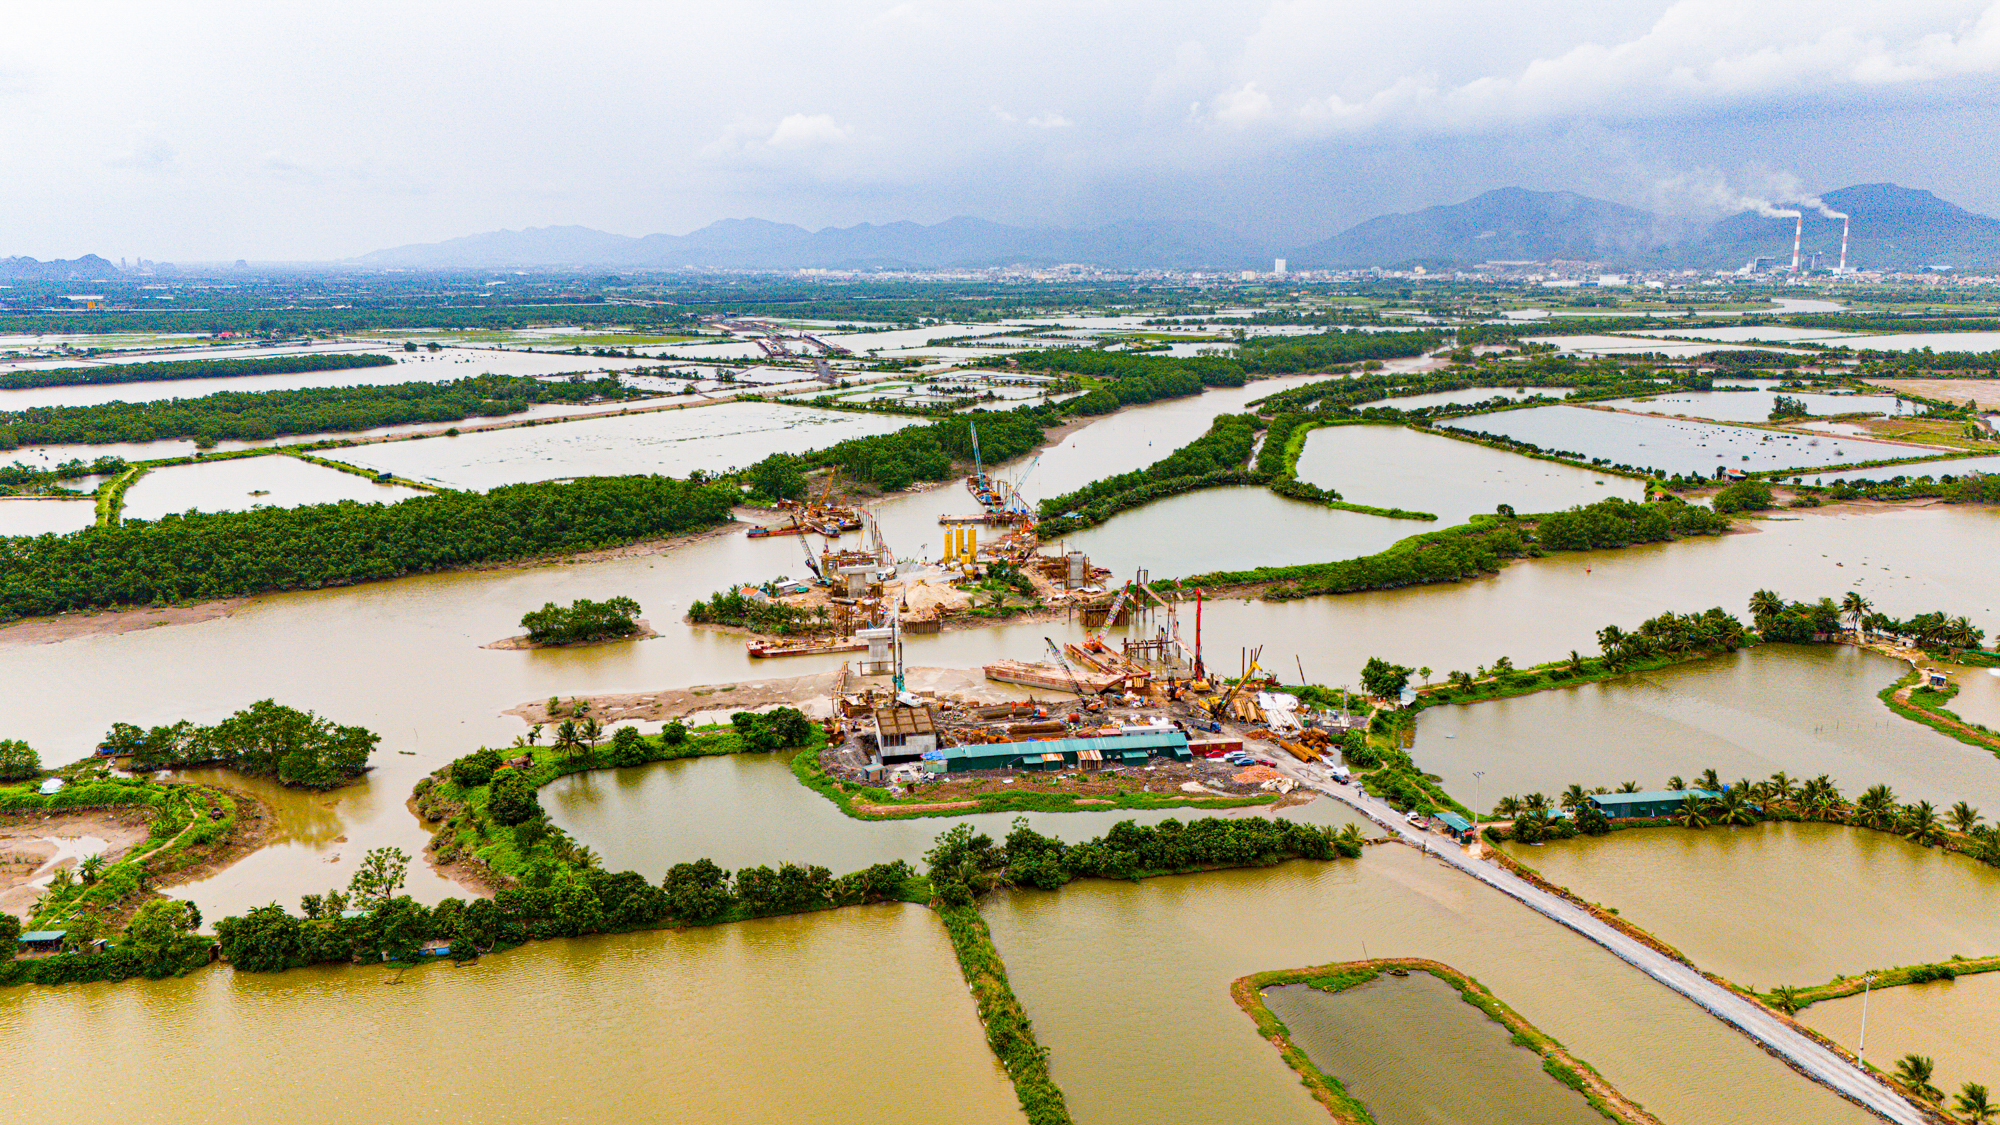 Toàn cảnh tuyến đường 9.400 tỷ đang xây dựng, rộng 10 làn xe, sẽ kết nối 3 thành phố của tỉnh Quảng Ninh- Ảnh 9.